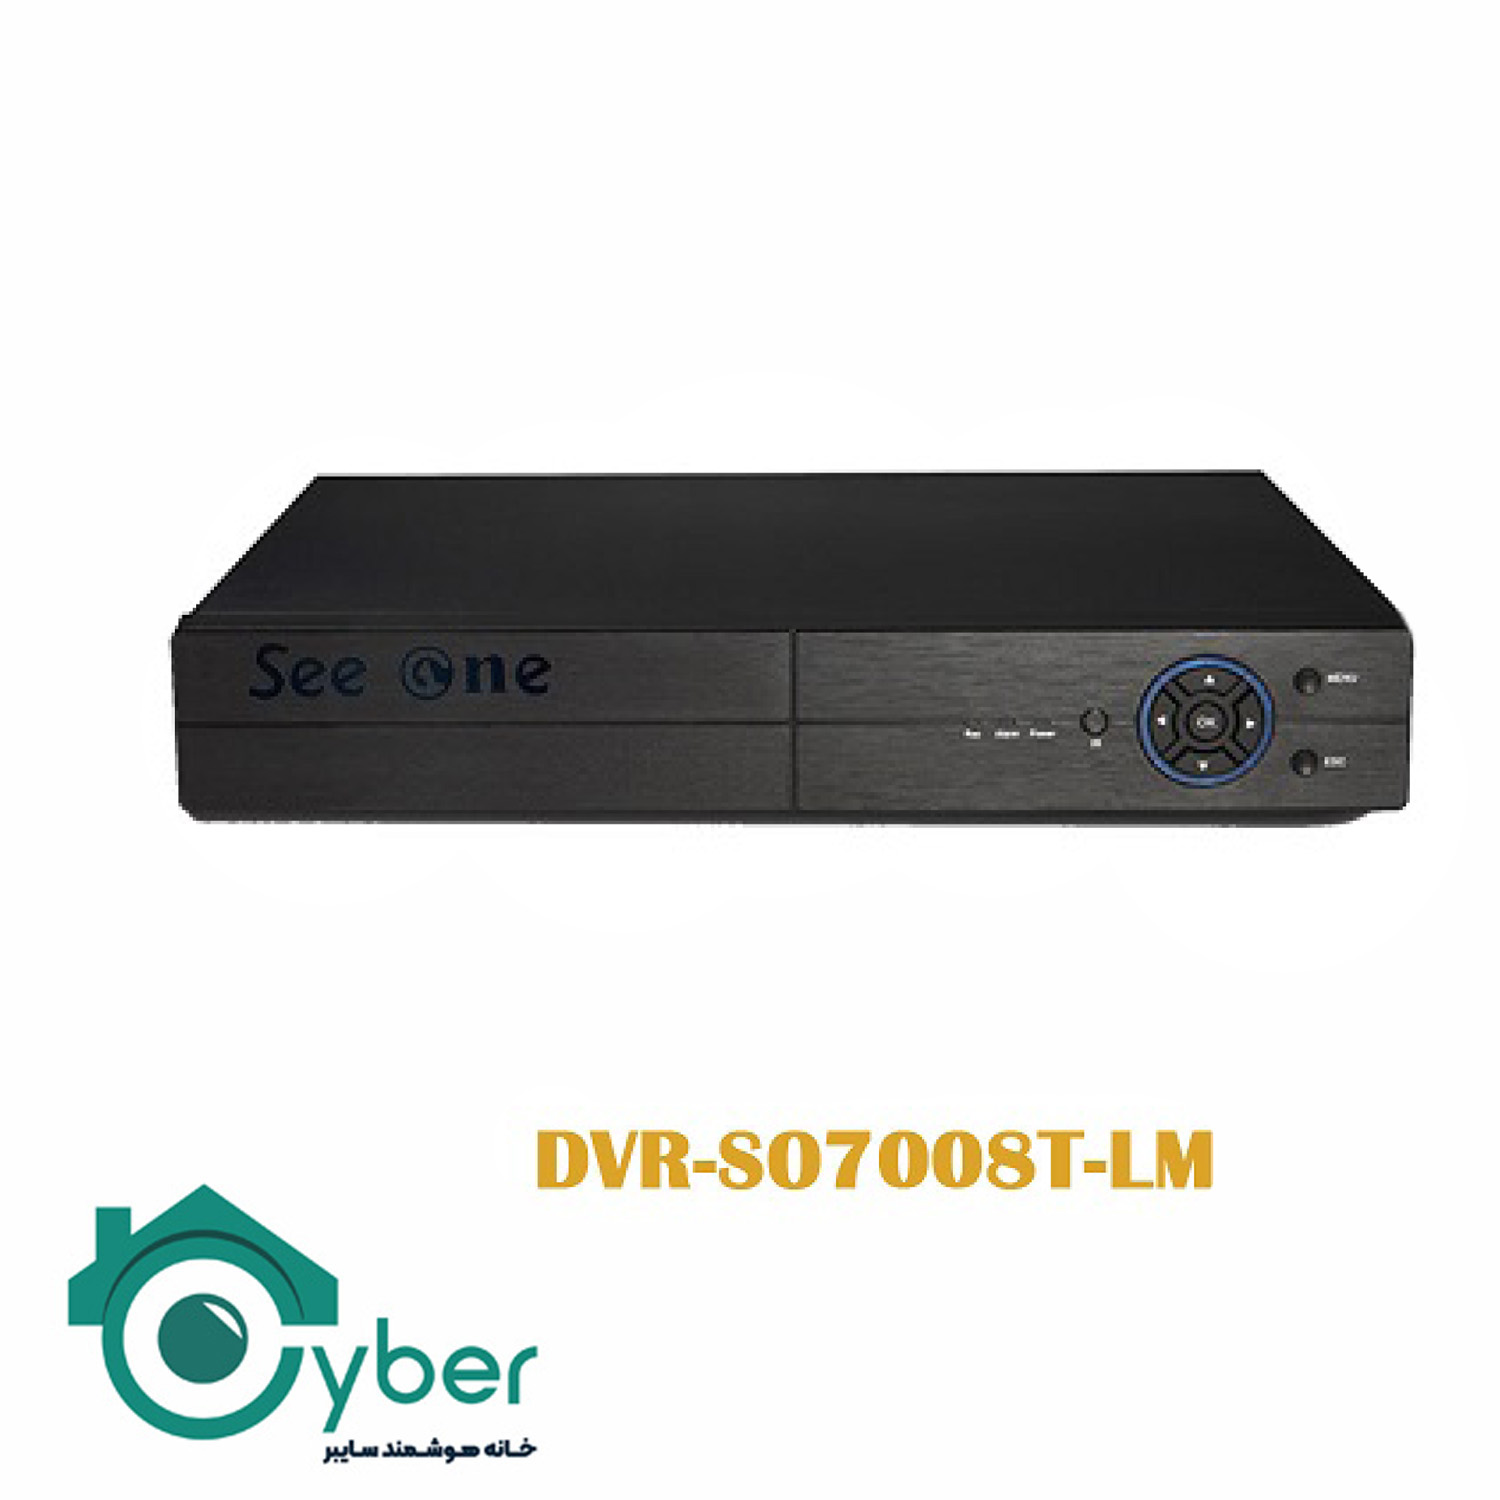 دستگاه ضبط تصاویر 8 کانال DVR-S07008T-LM مدل Seeone سیوان